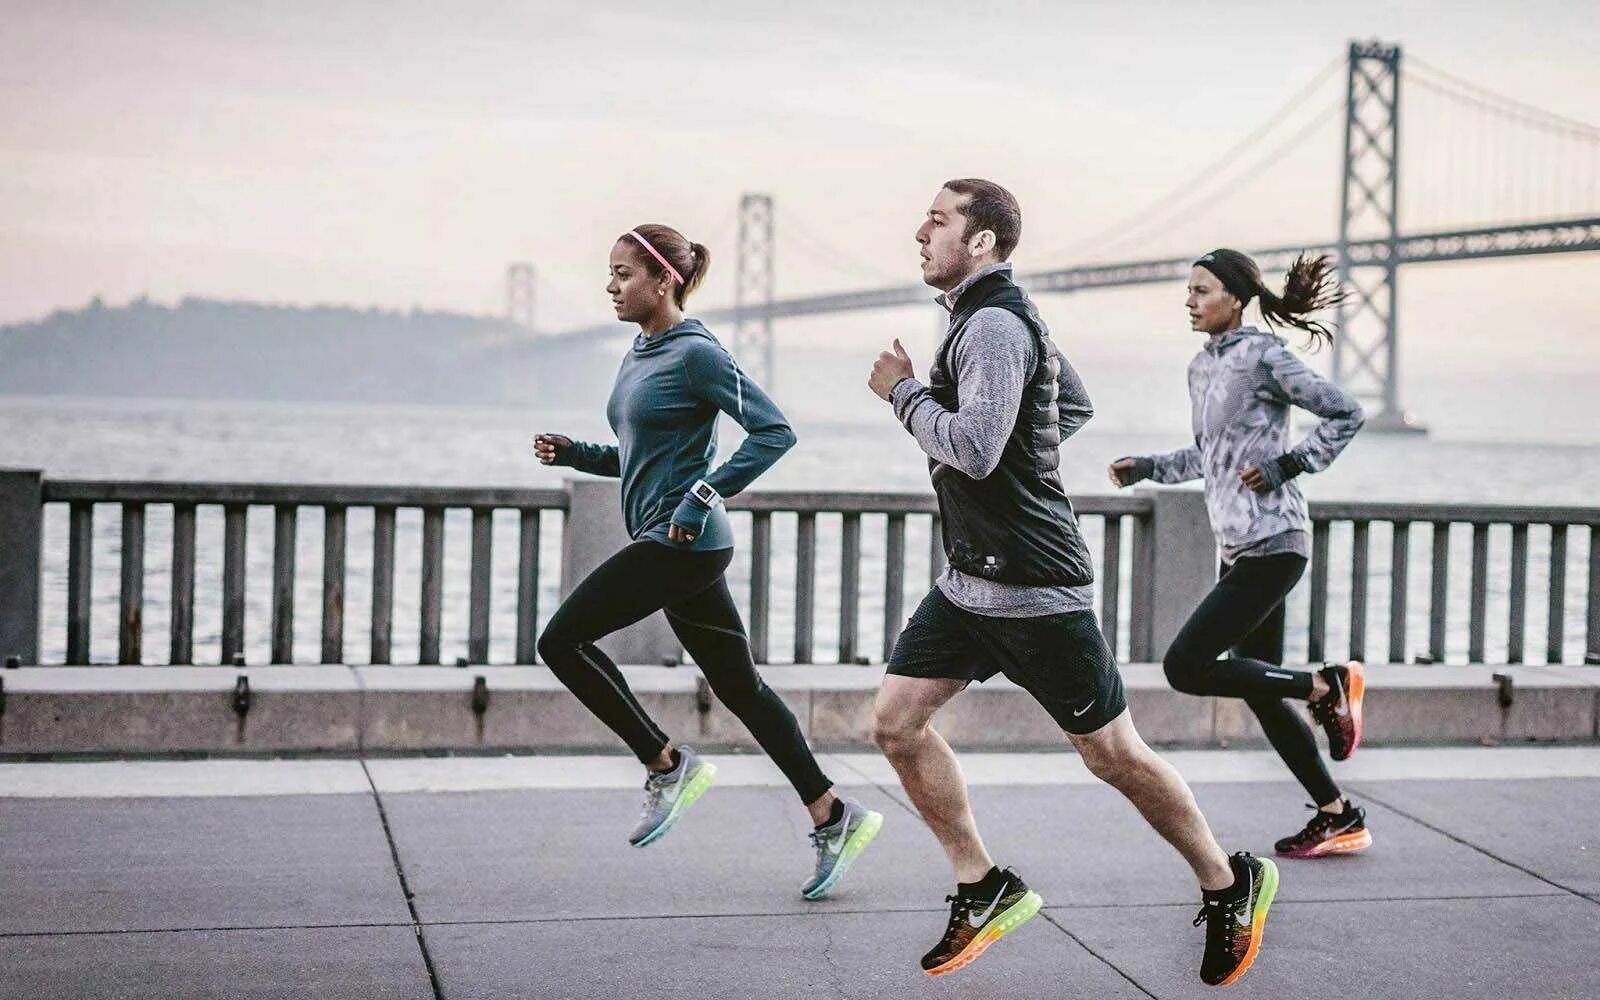 Бежать спорить. Nike Running. Nike Running бег. Занятие спортом. Фотосессия в спортивном стиле.